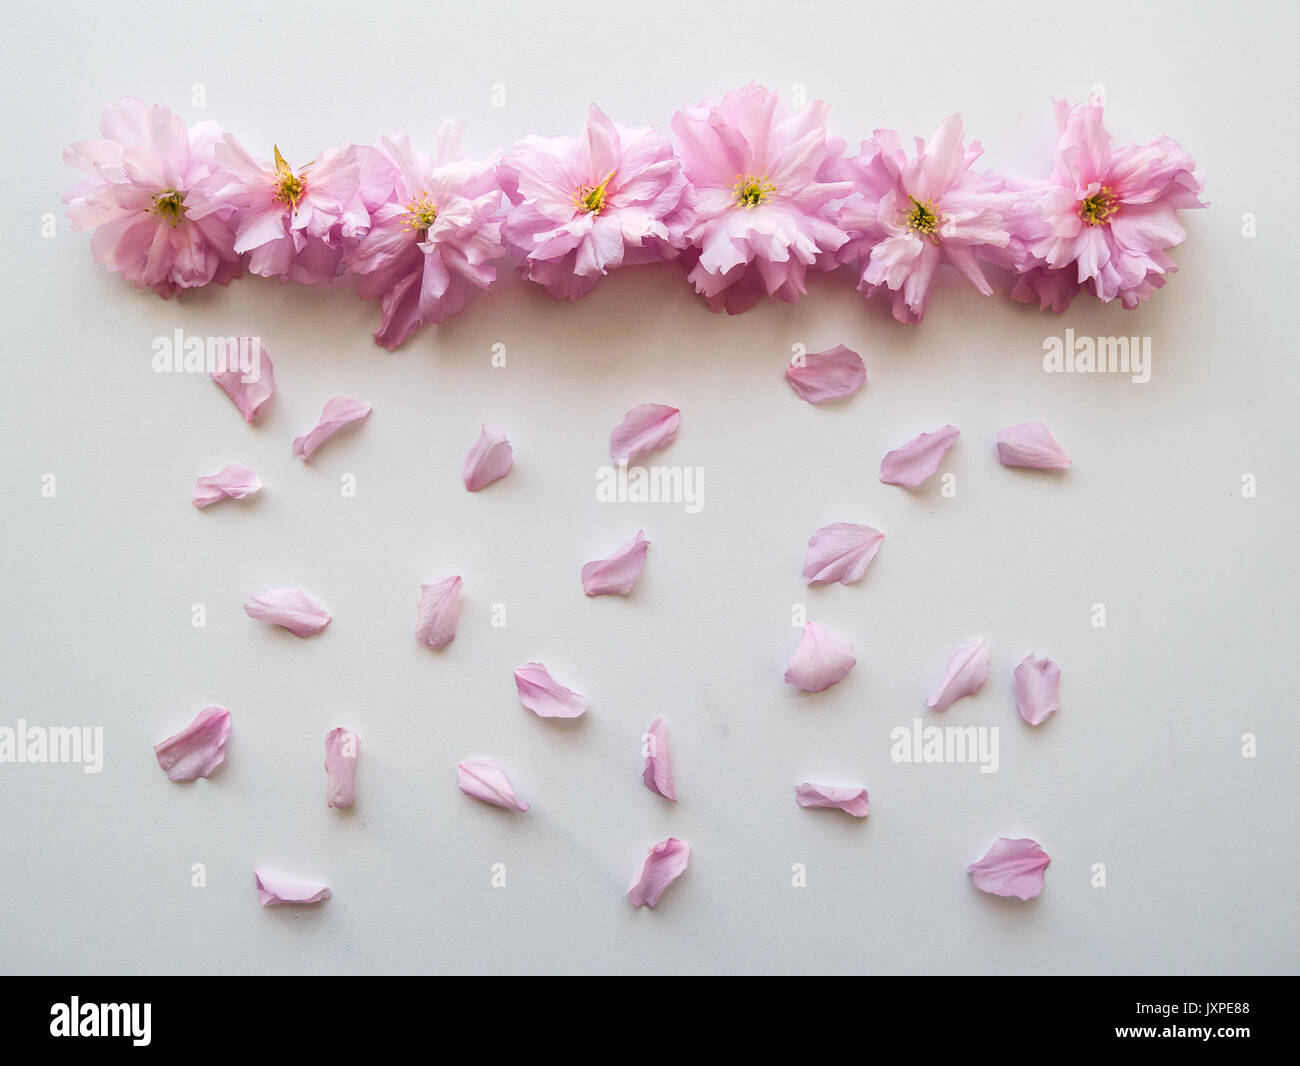 Rosa Blumen in einer Linie mit Blüten simulieren Regen auf einem weißen Tisch angeordnet. Ansicht von oben. Querformat. Stockfoto